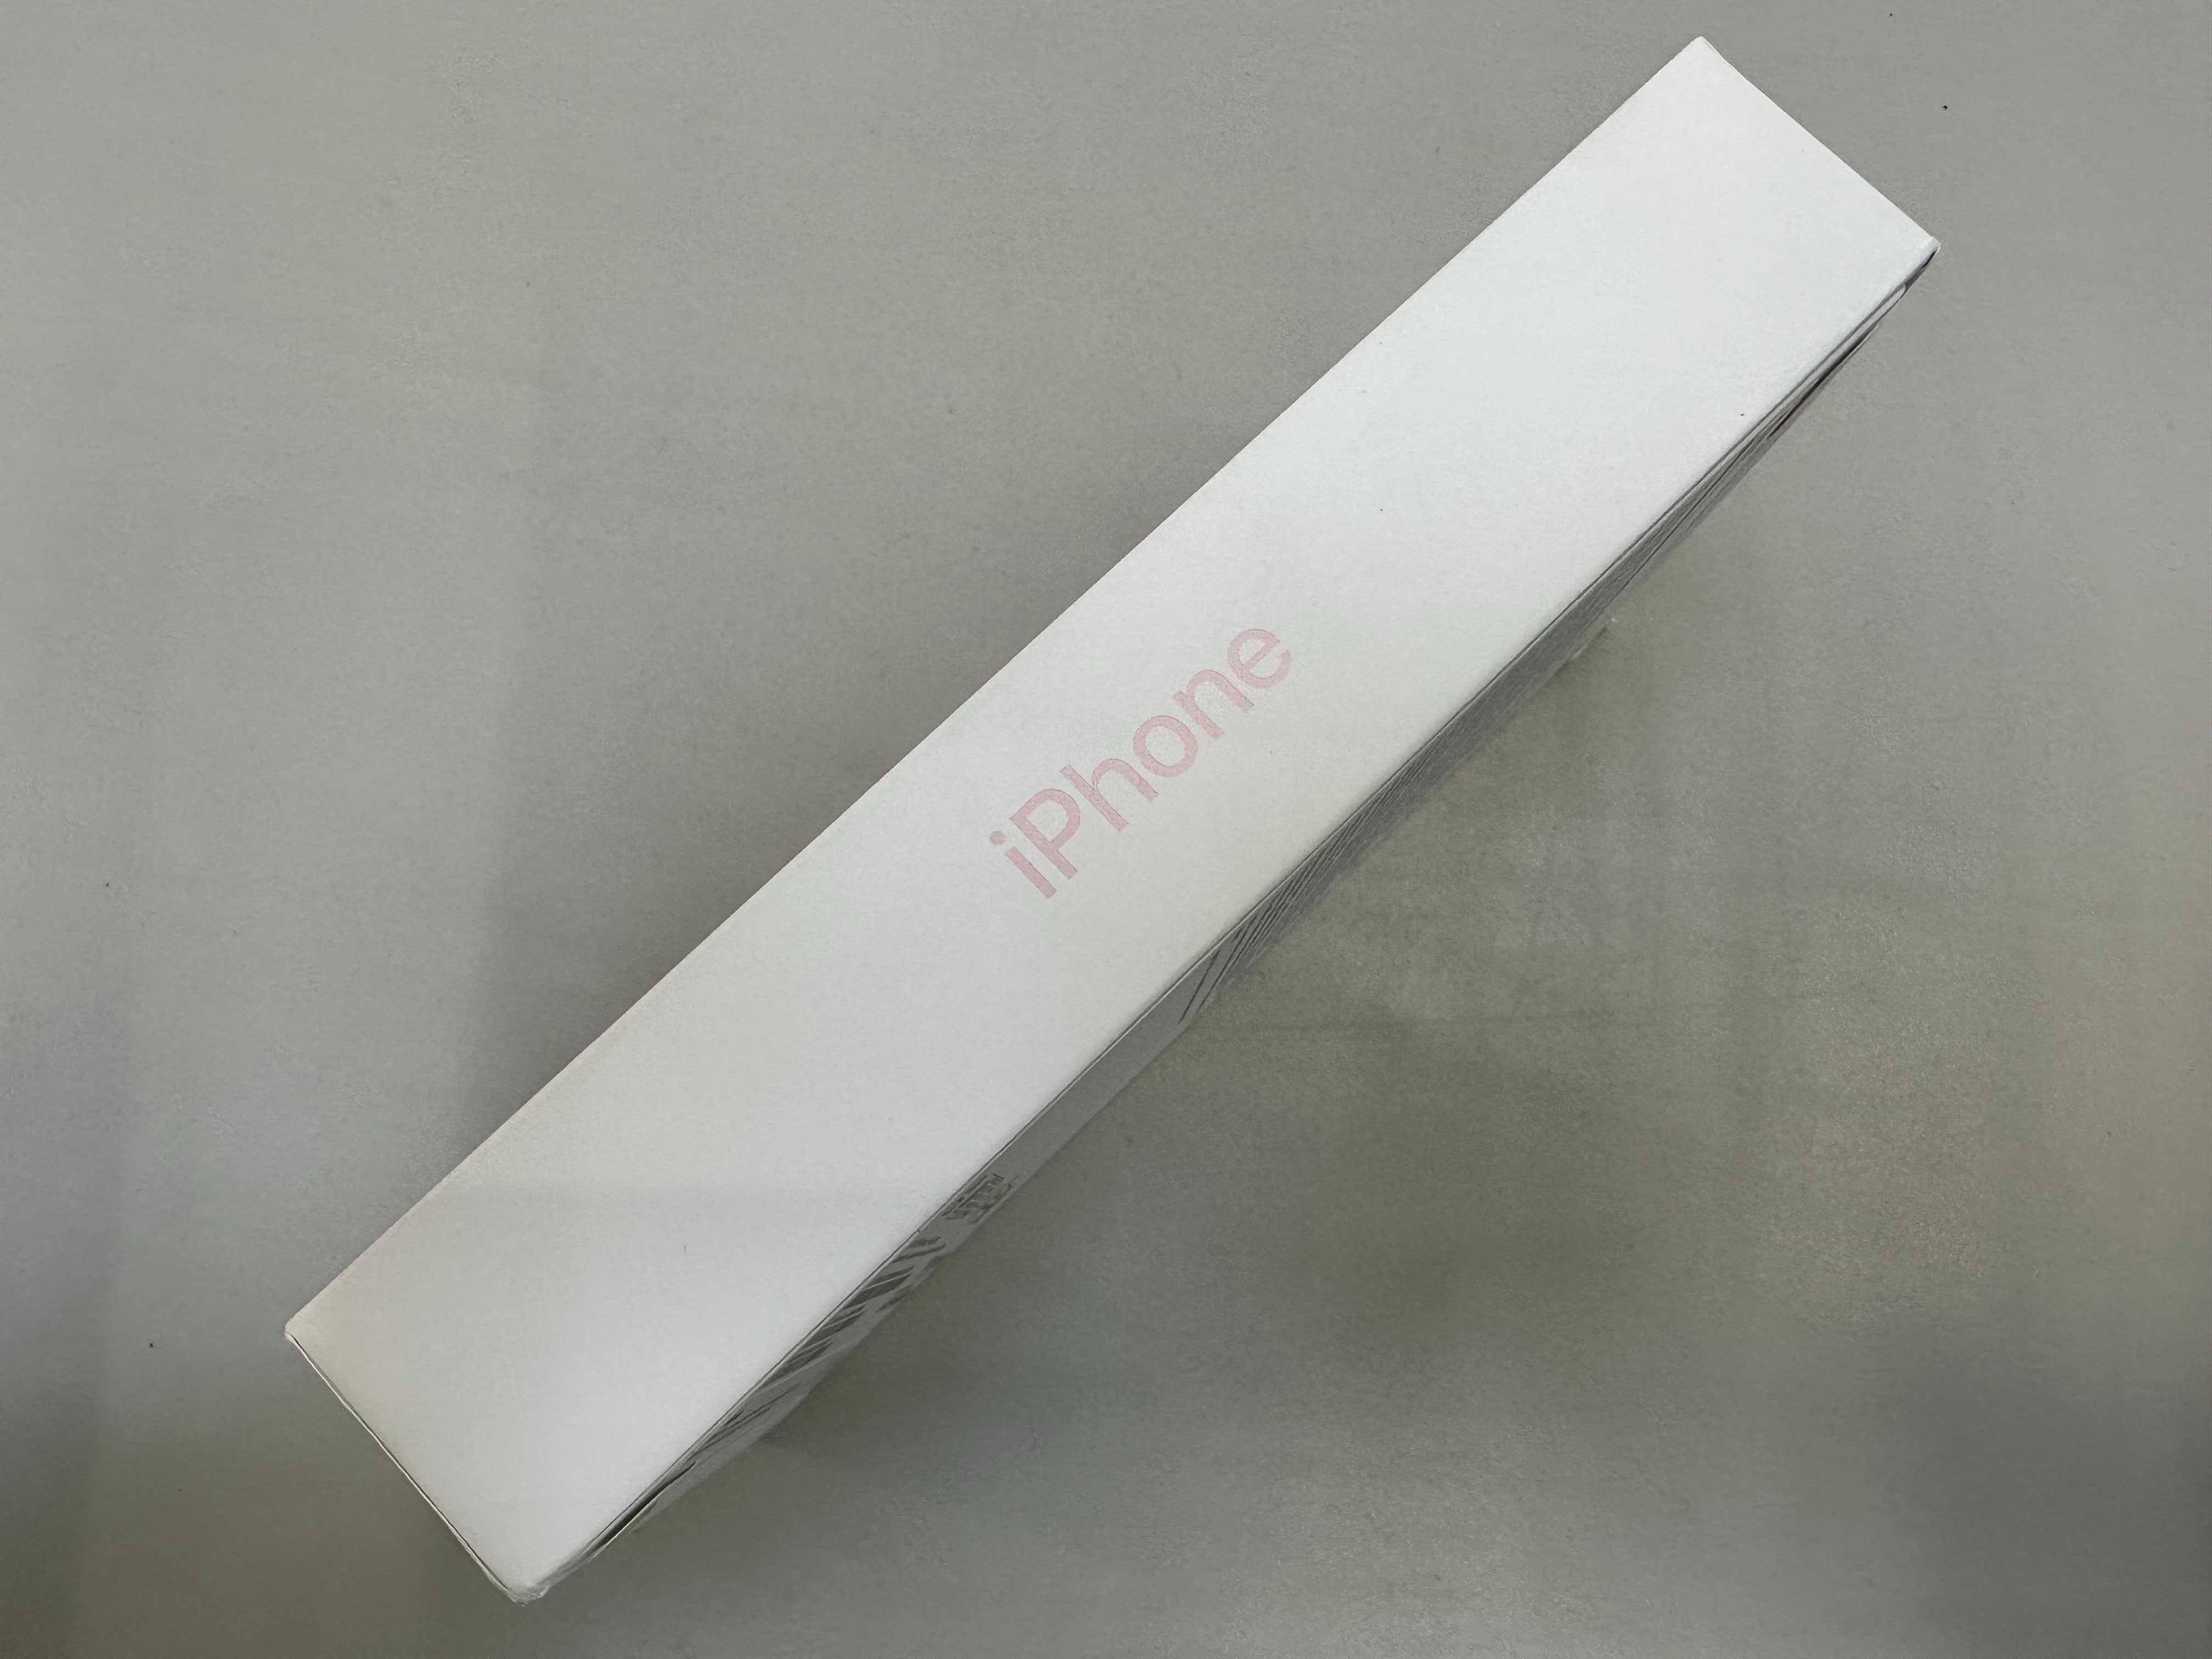 NOWY Apple iPhone 15 128GB Różowy Pink Teletorium Auchan Wałbrzych